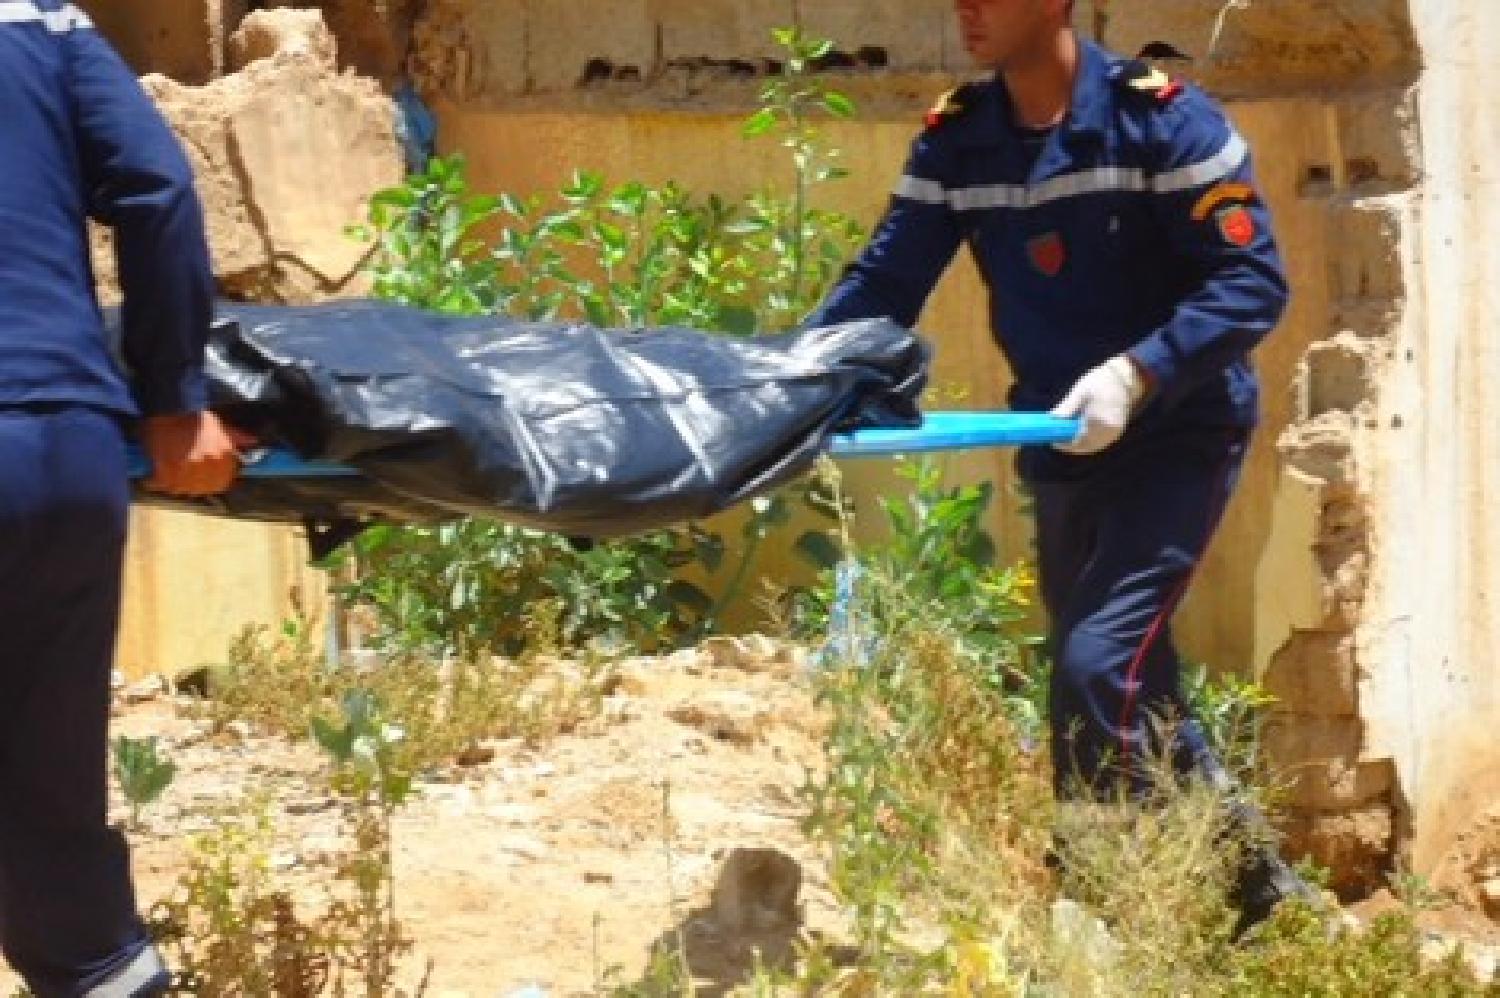 العثور على جثة شاب في صهريج مائي بإقليم شيشاوة يستنفر السلطات